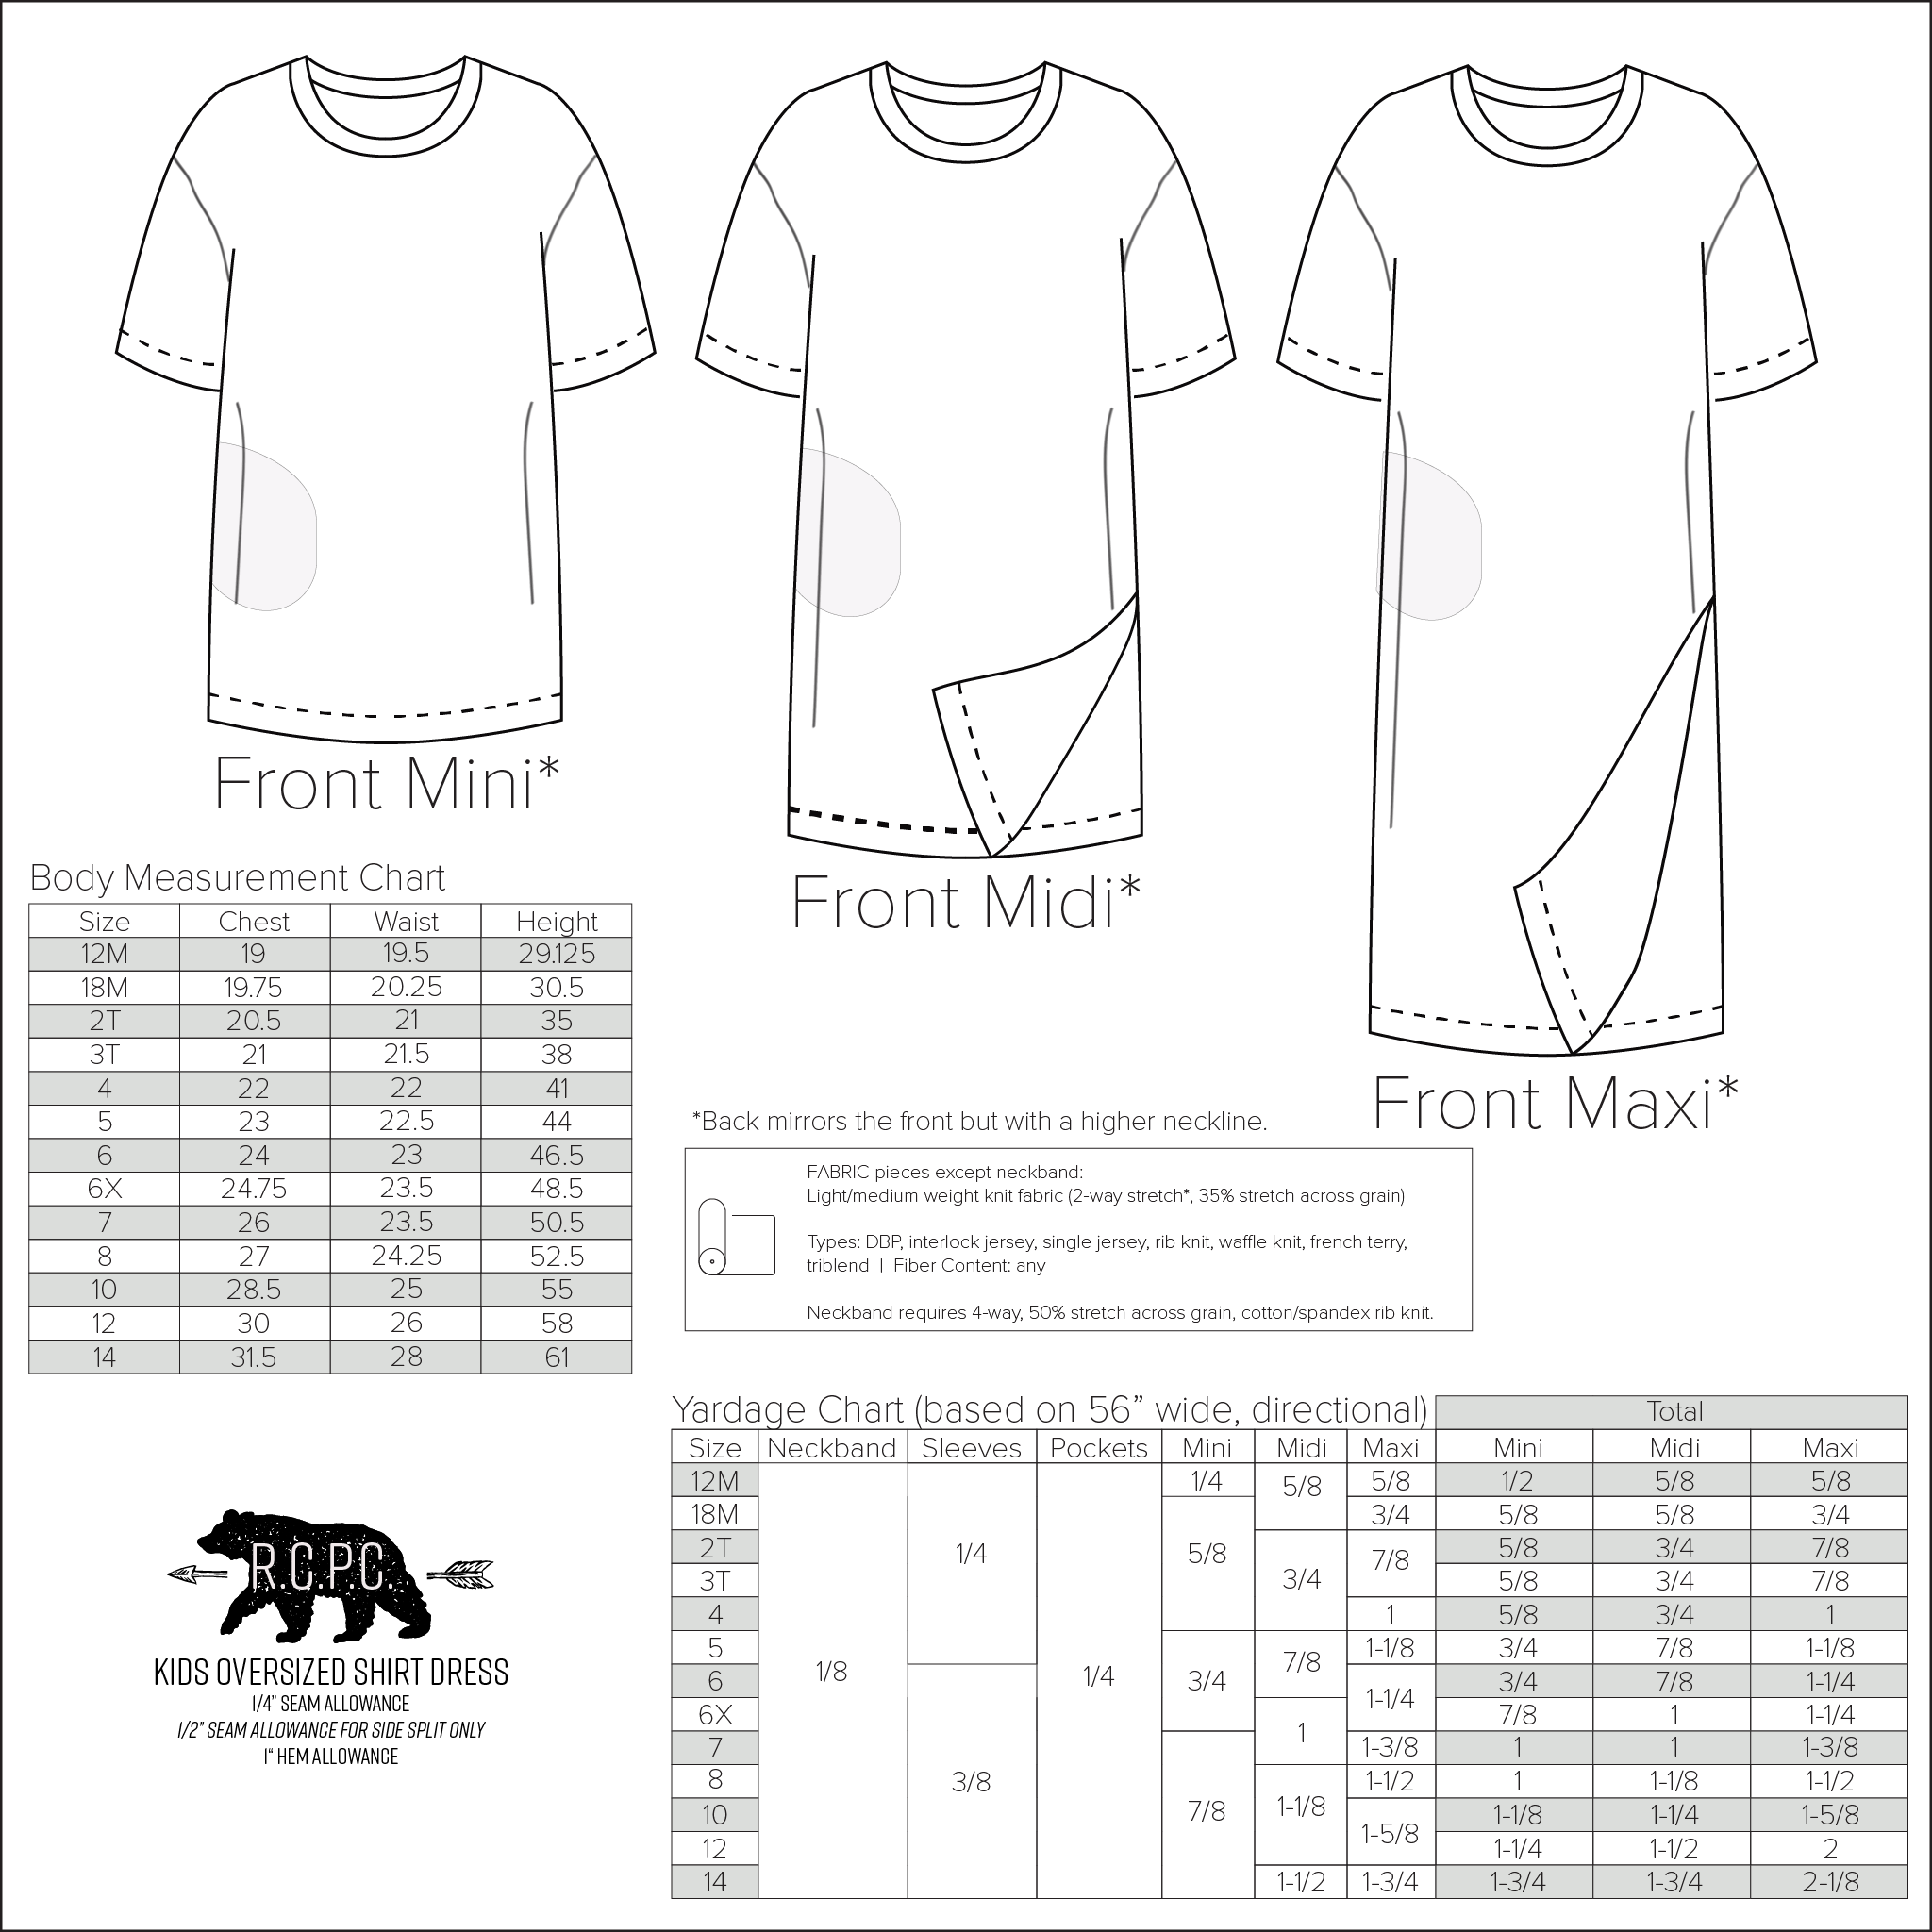 Size chart tshirt  T shirt sewing pattern, Size chart tshirt